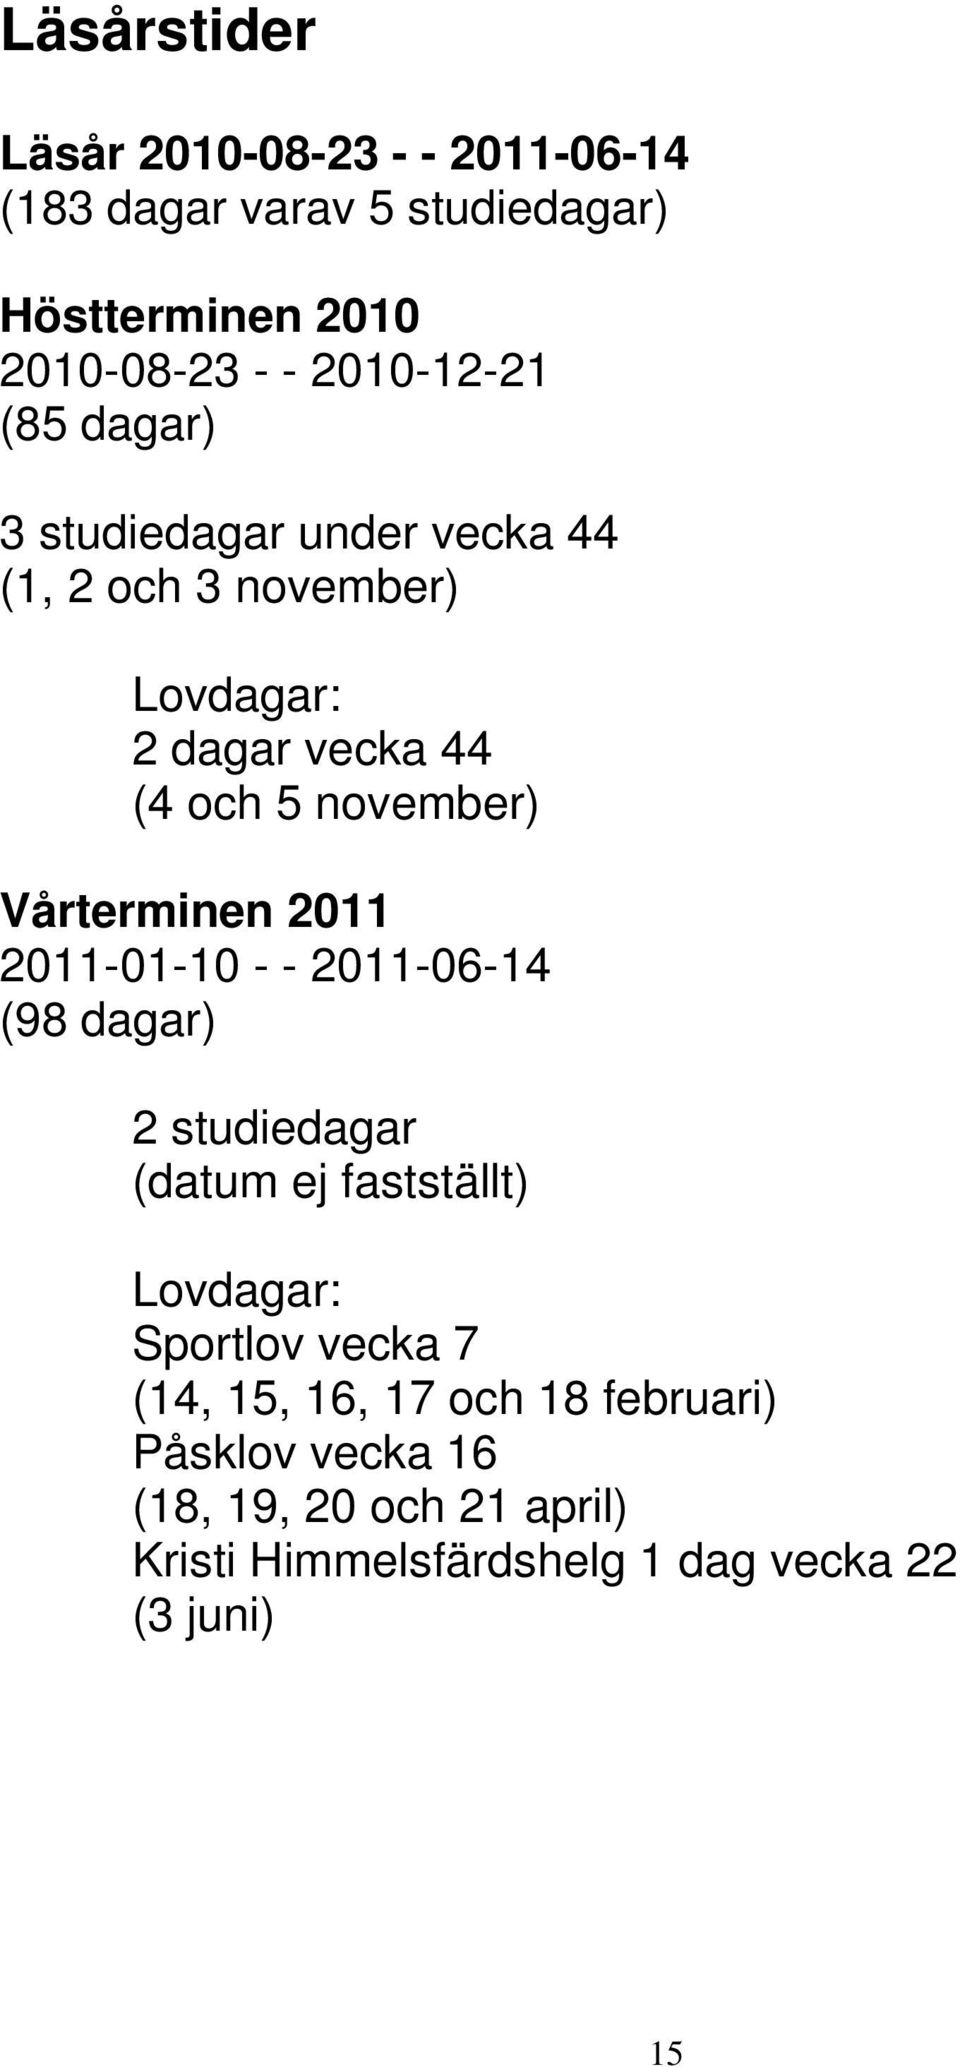 november) Vårterminen 2011 2011-01-10 - - 2011-06-14 (98 dagar) 2 studiedagar (datum ej fastställt) Lovdagar: